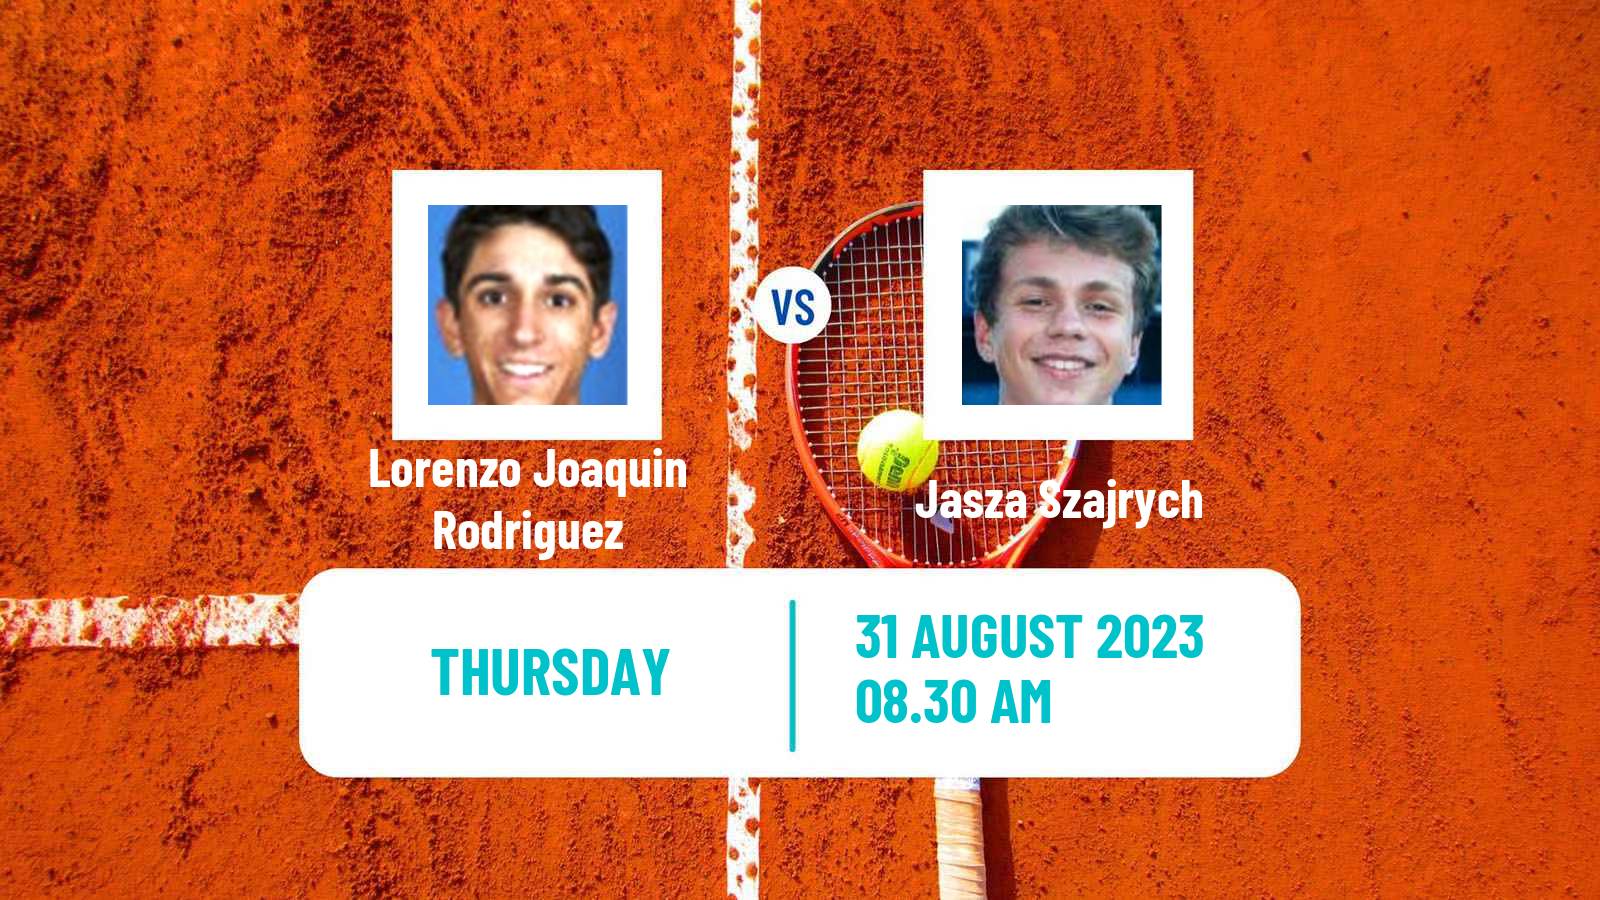 Tennis ITF M15 Szczawno Men Lorenzo Joaquin Rodriguez - Jasza Szajrych